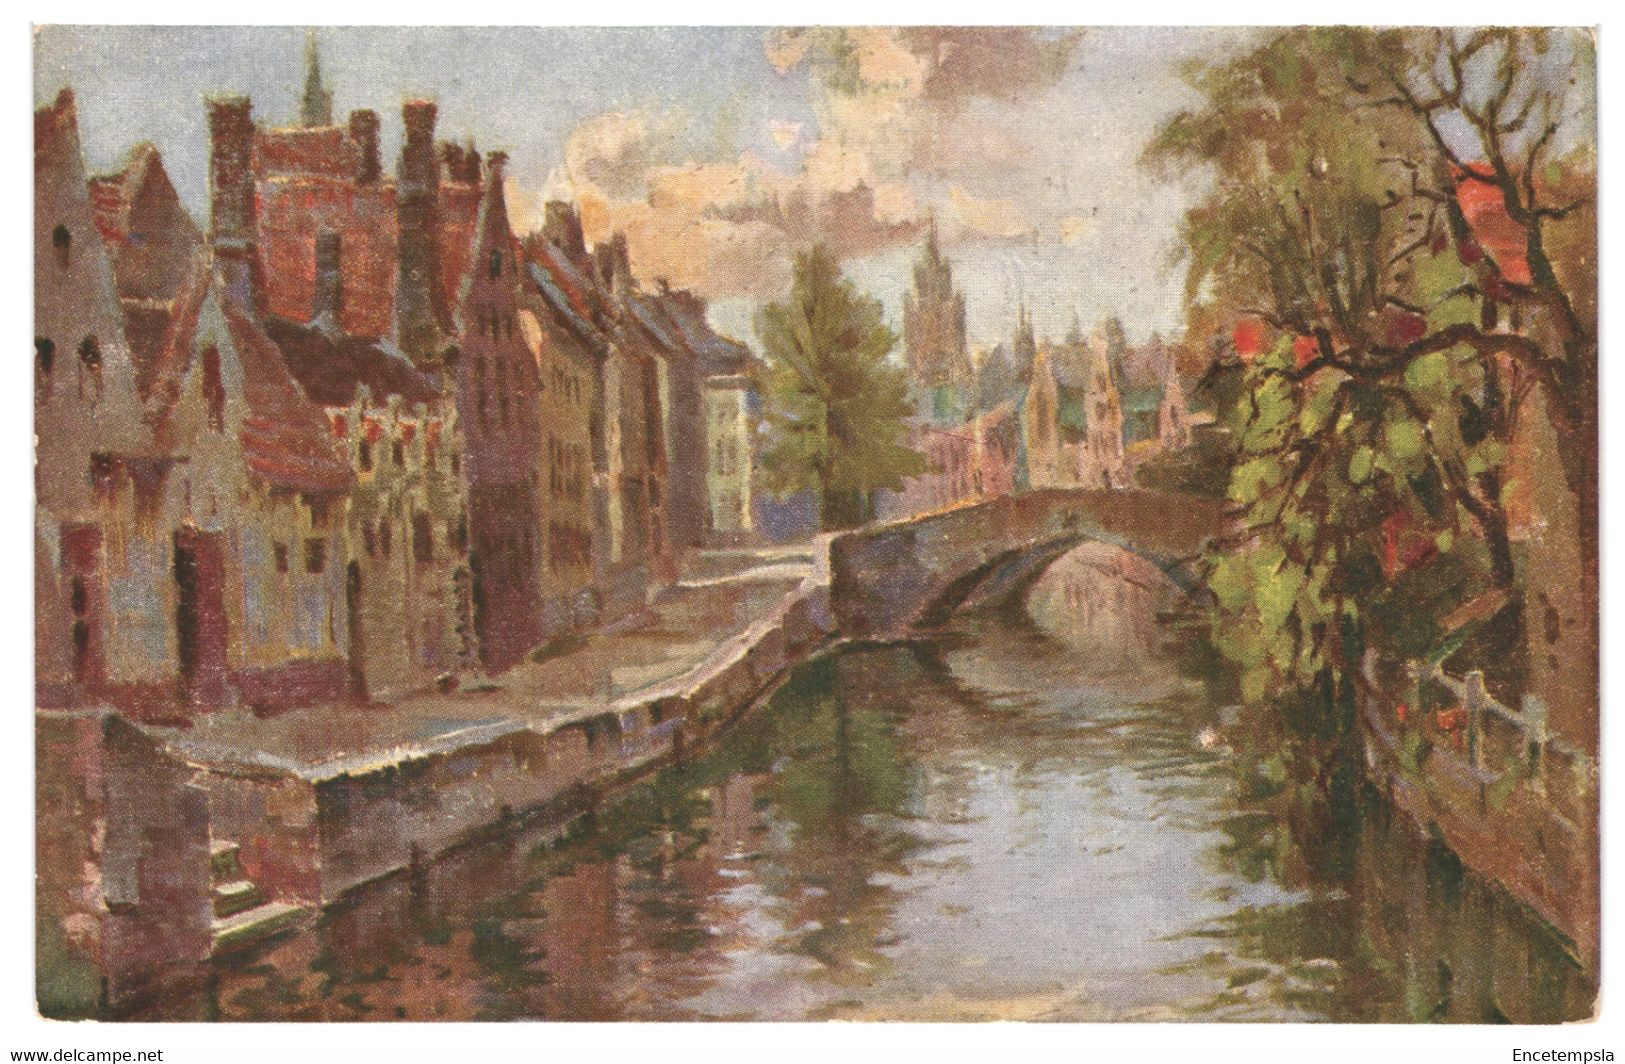 CPA - Carte postale - Lot de 20  cartes postales de Belgique Bruges - VMBELBRUGES-1